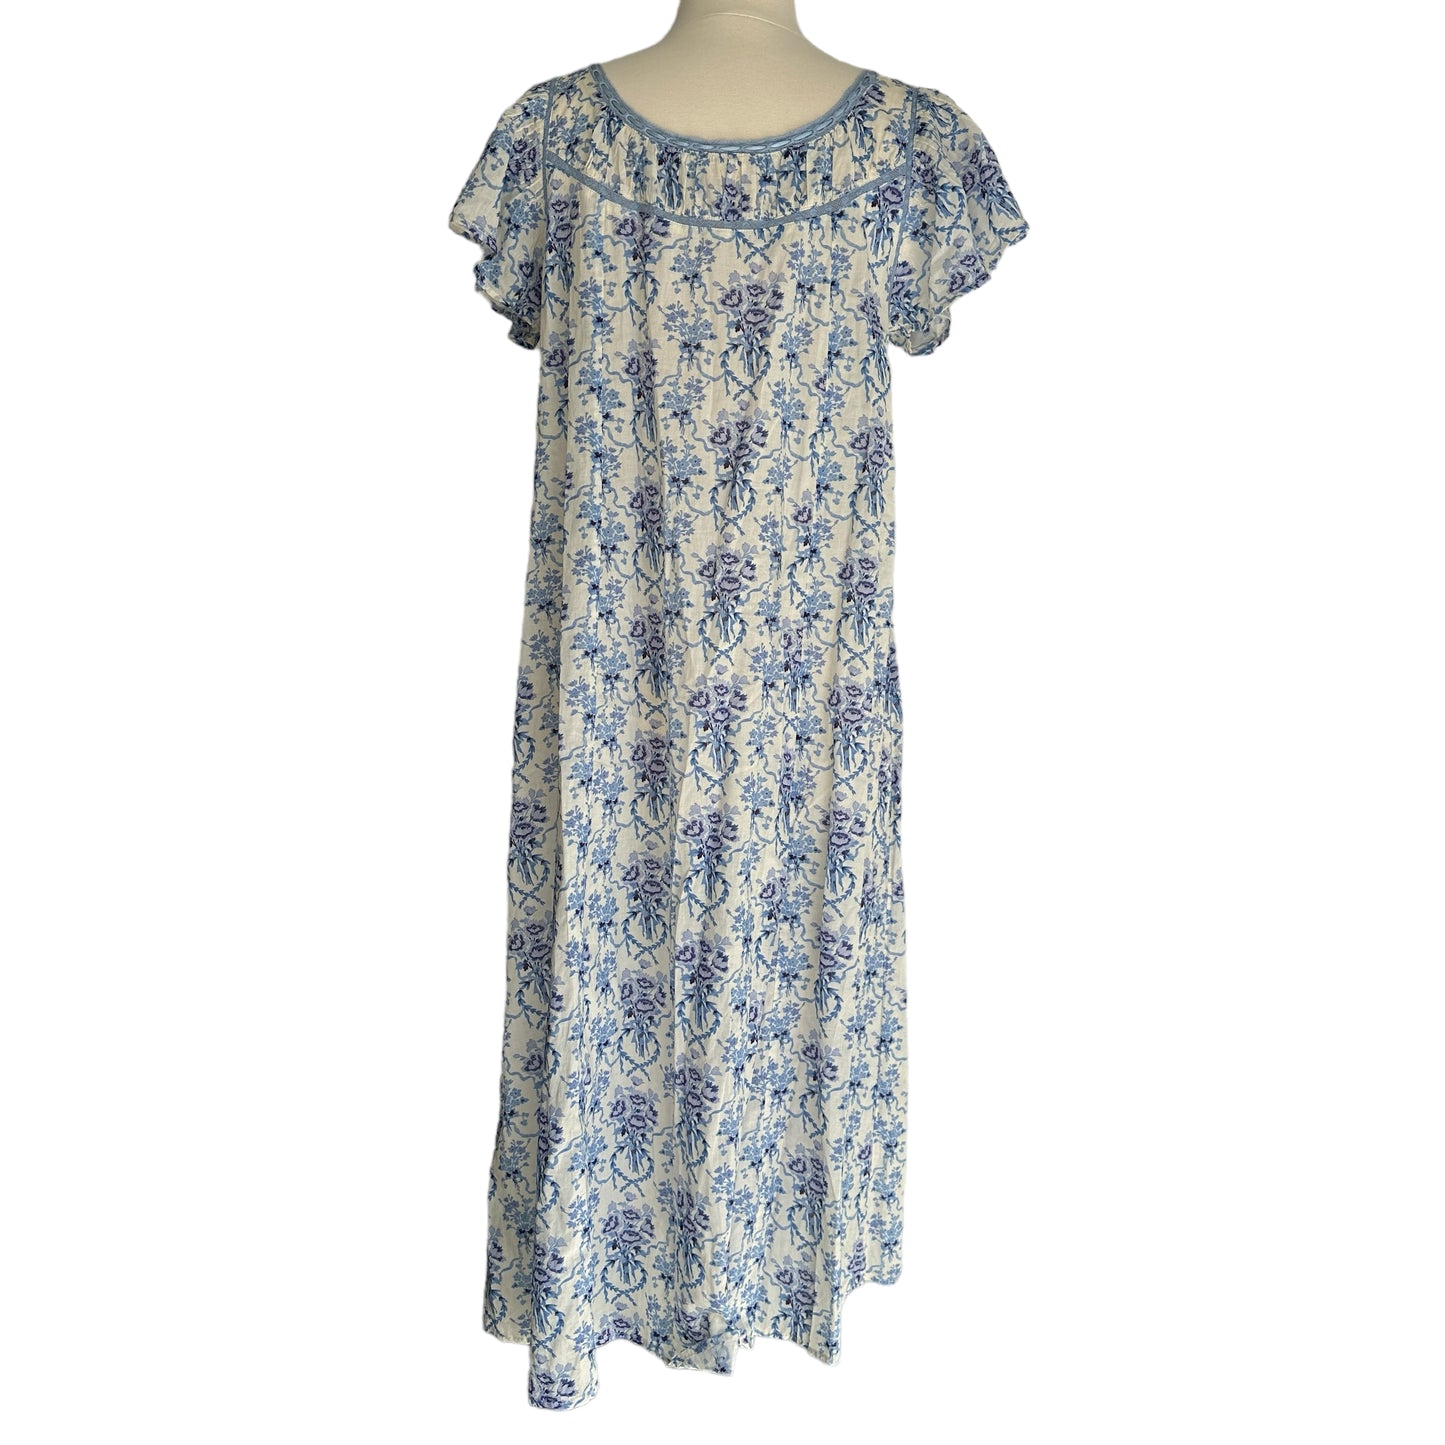 Blue & White Floral Dress - XS